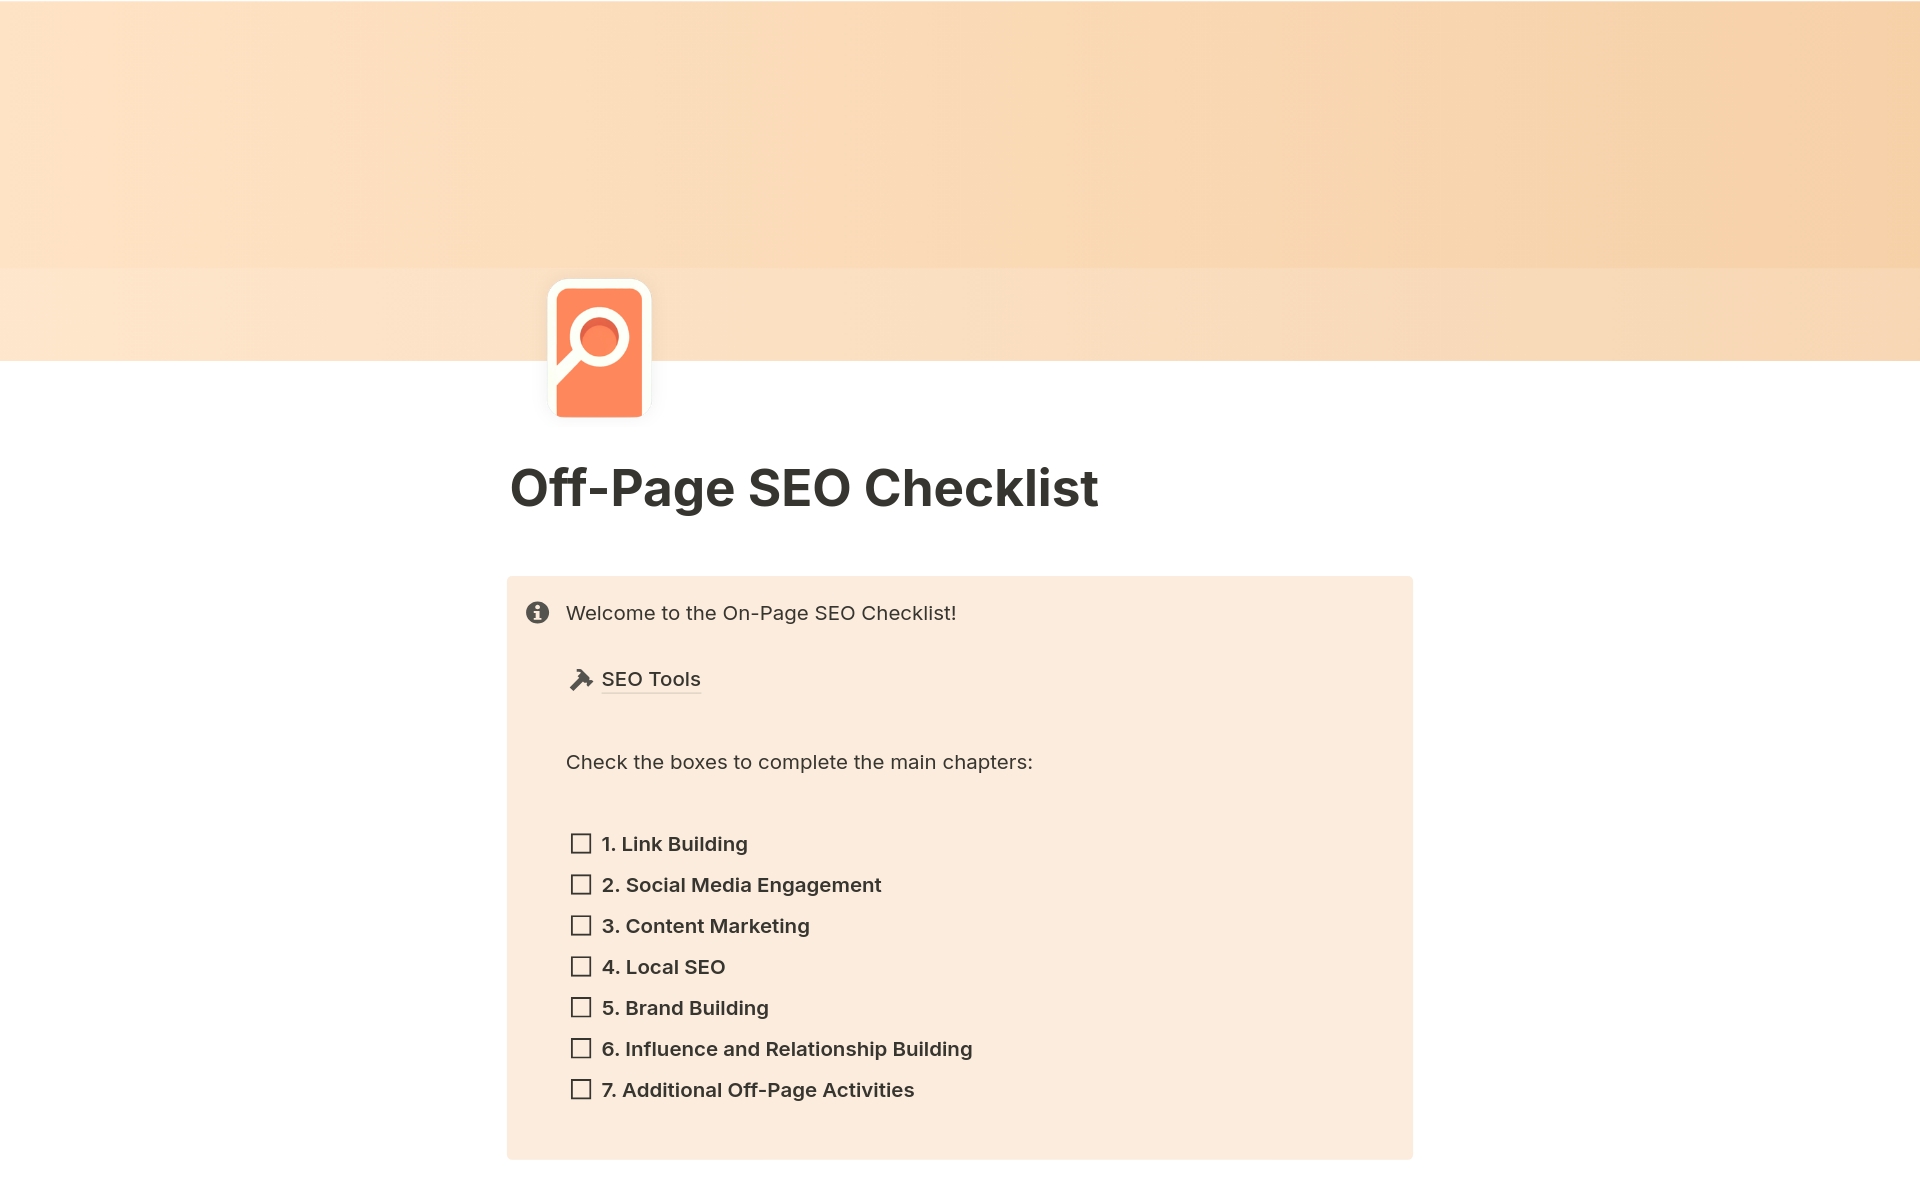 Vista previa de plantilla para Off-Page SEO Checklist